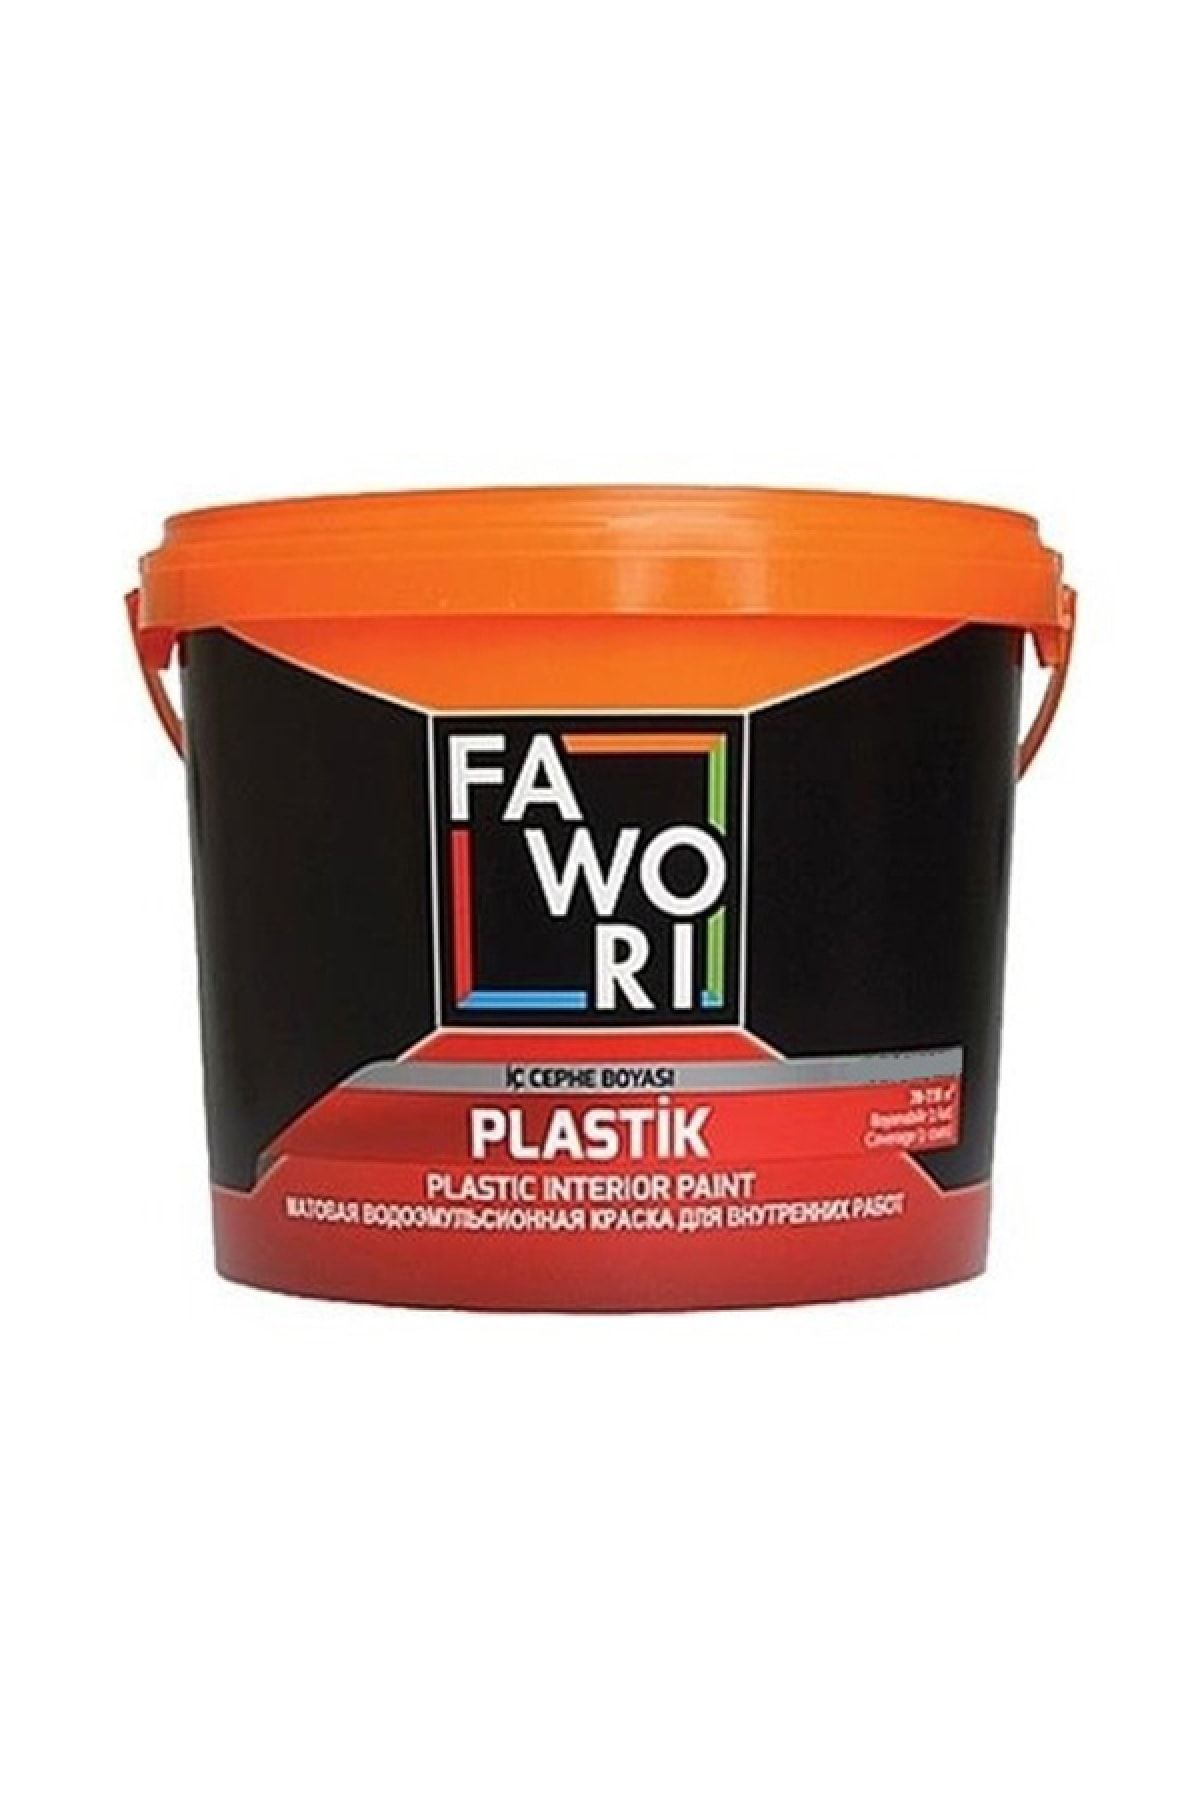 Fawori Plastik Iç Cephe Duvar Boyası 3.5 Kg Renk:yulaf